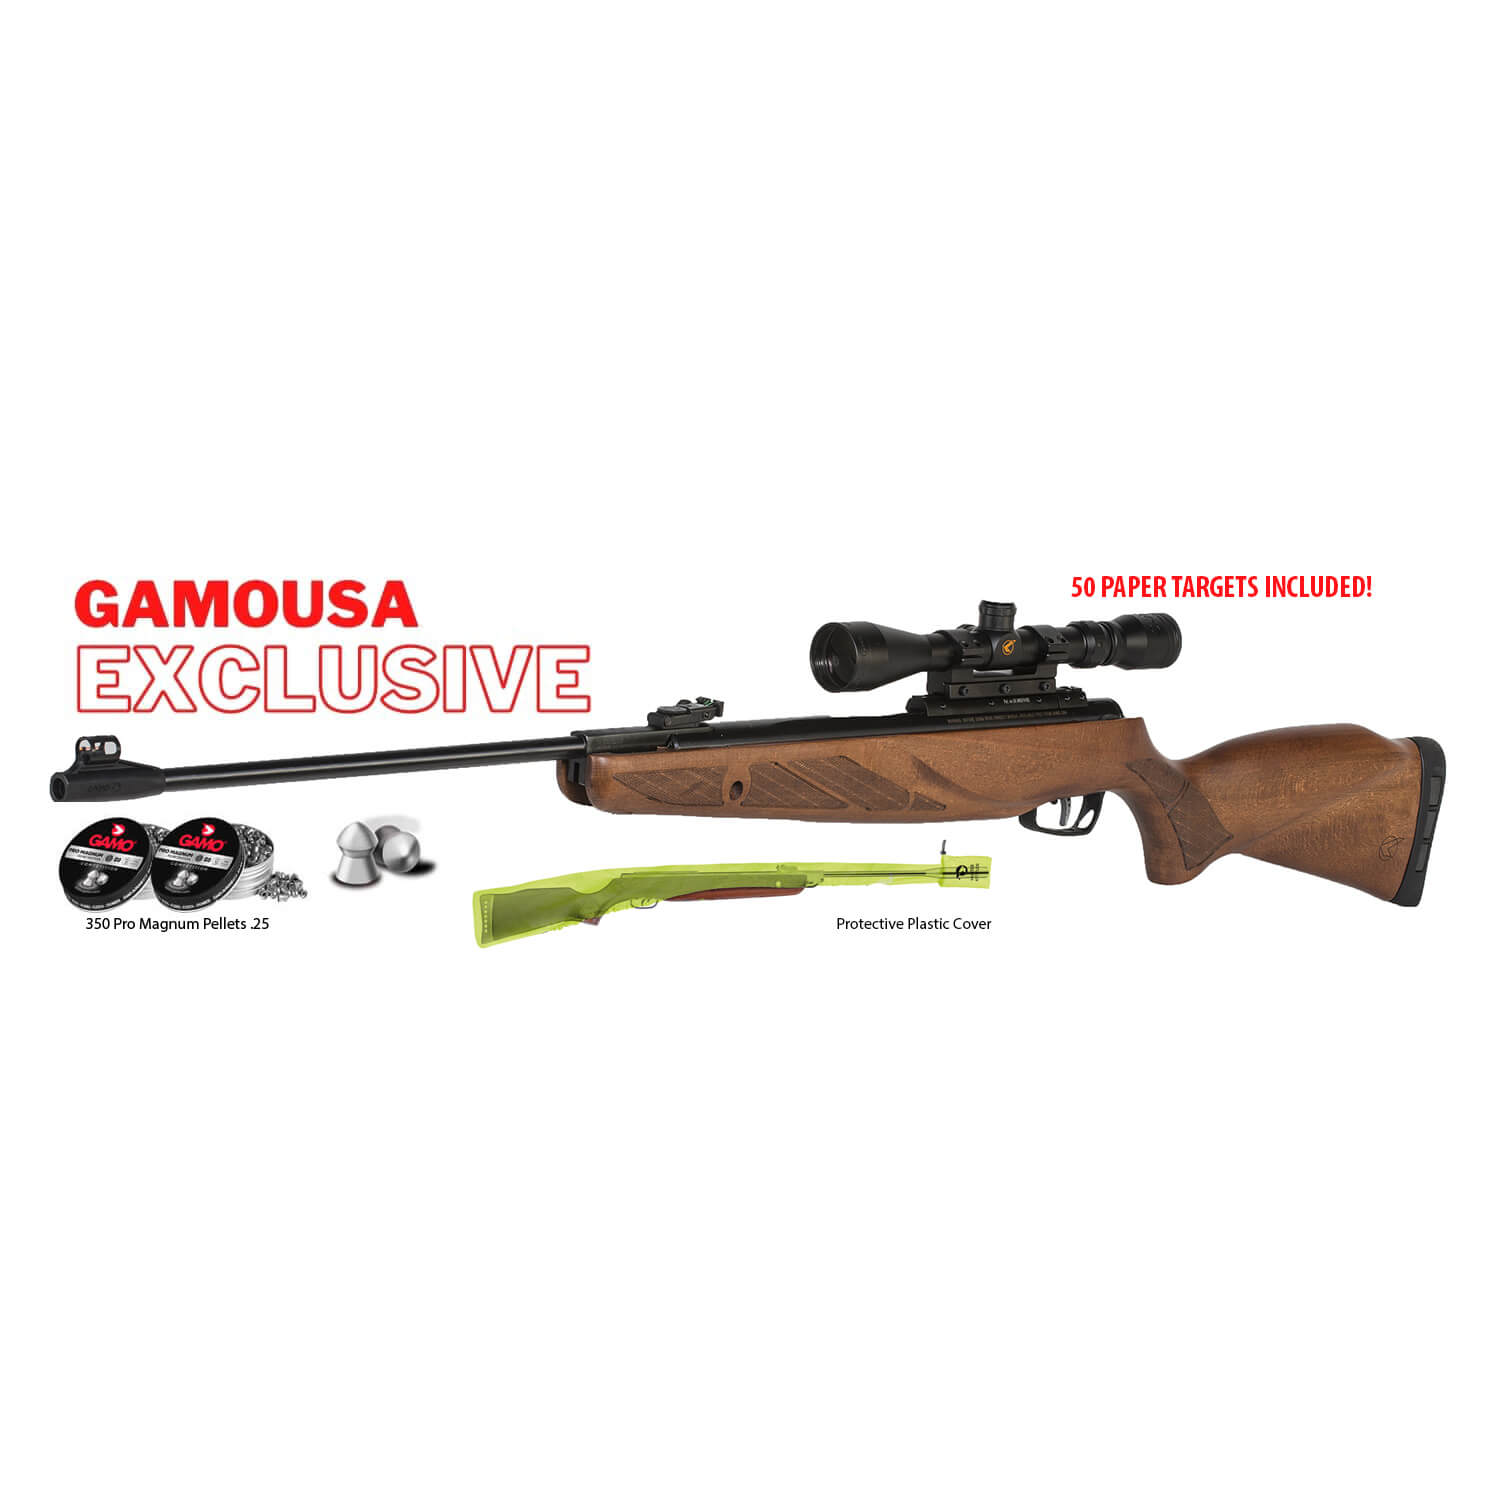 CARABINAS IGT - arms air rifles - GAMO - Wholesale Knives